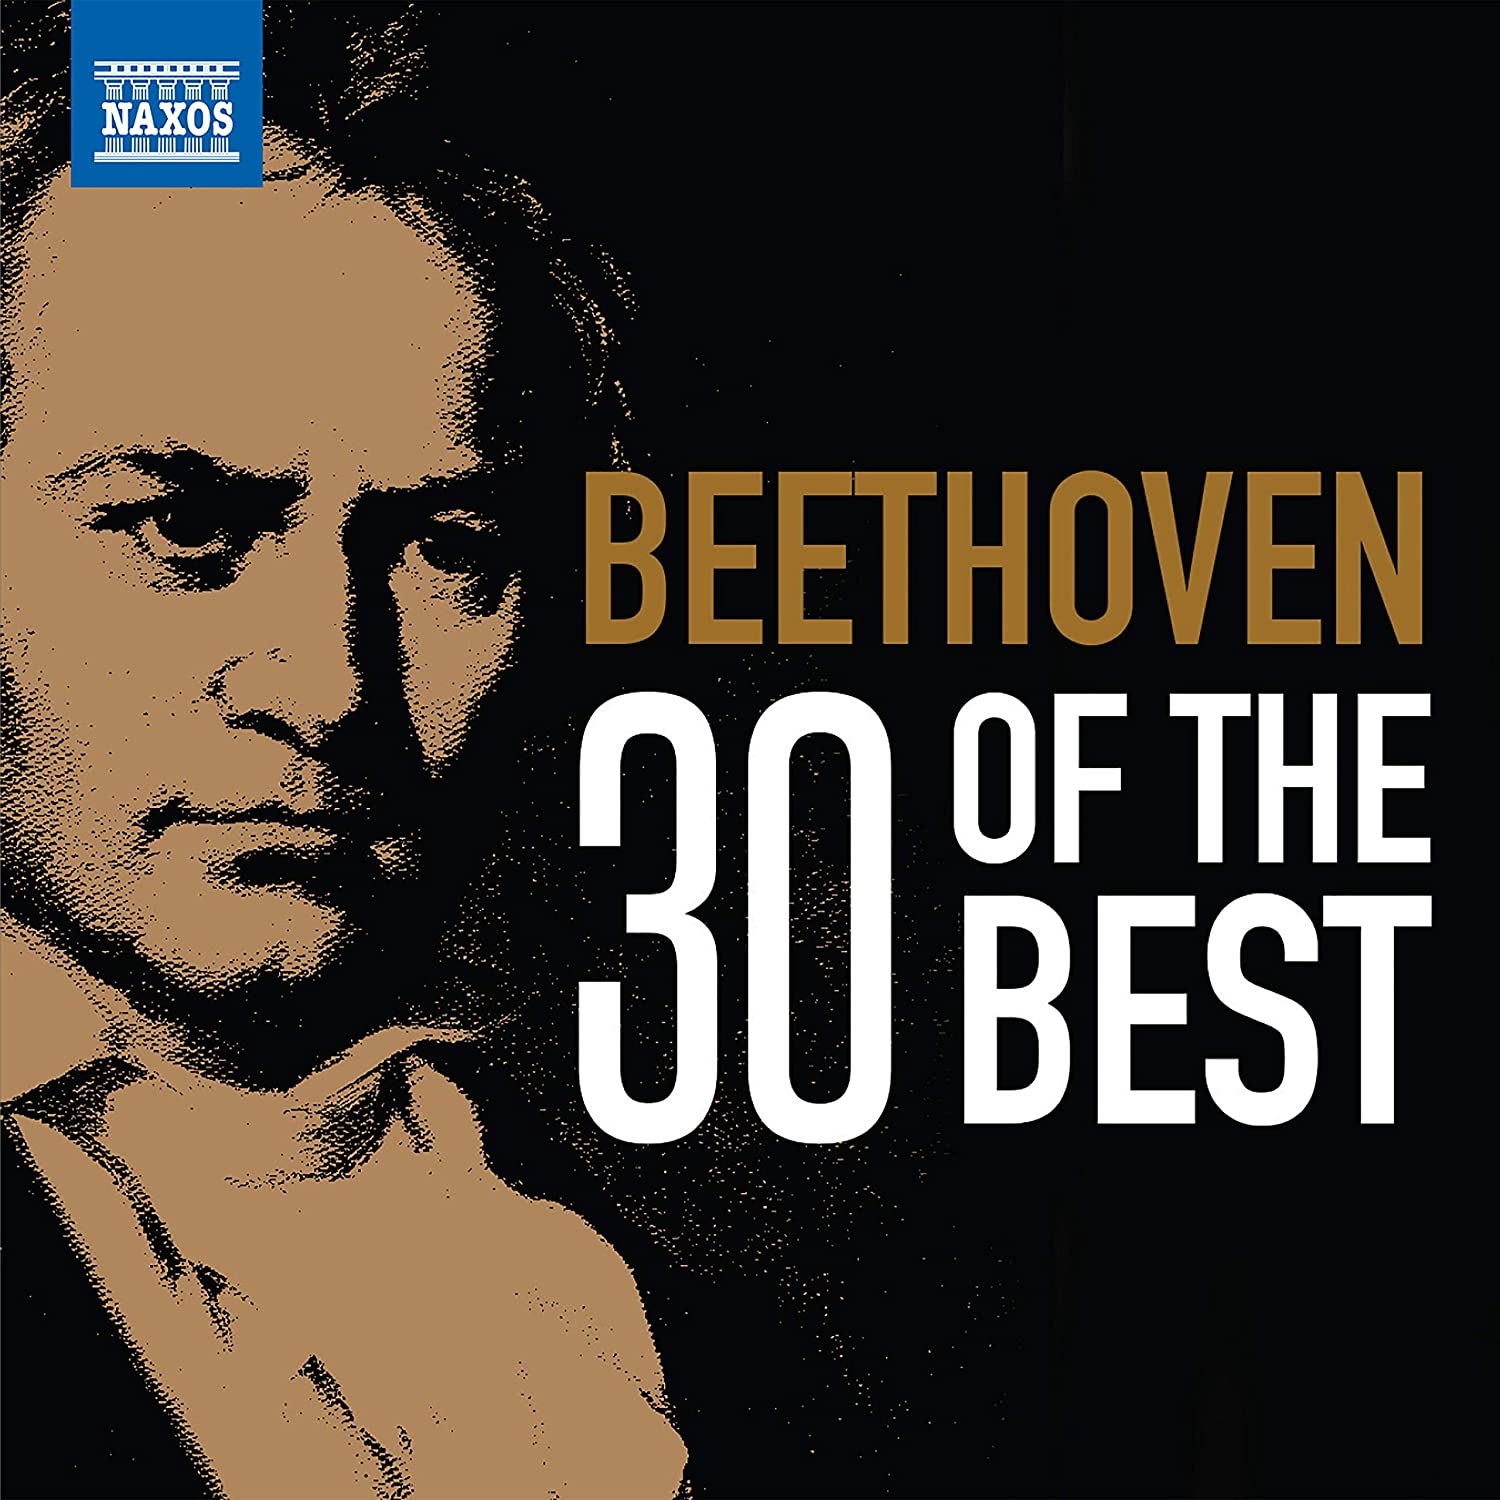 Audio Cd Ludwig Van Beethoven - 30 Of The Best (3 Cd) NUOVO SIGILLATO, EDIZIONE DEL 23/03/2020 SUBITO DISPONIBILE